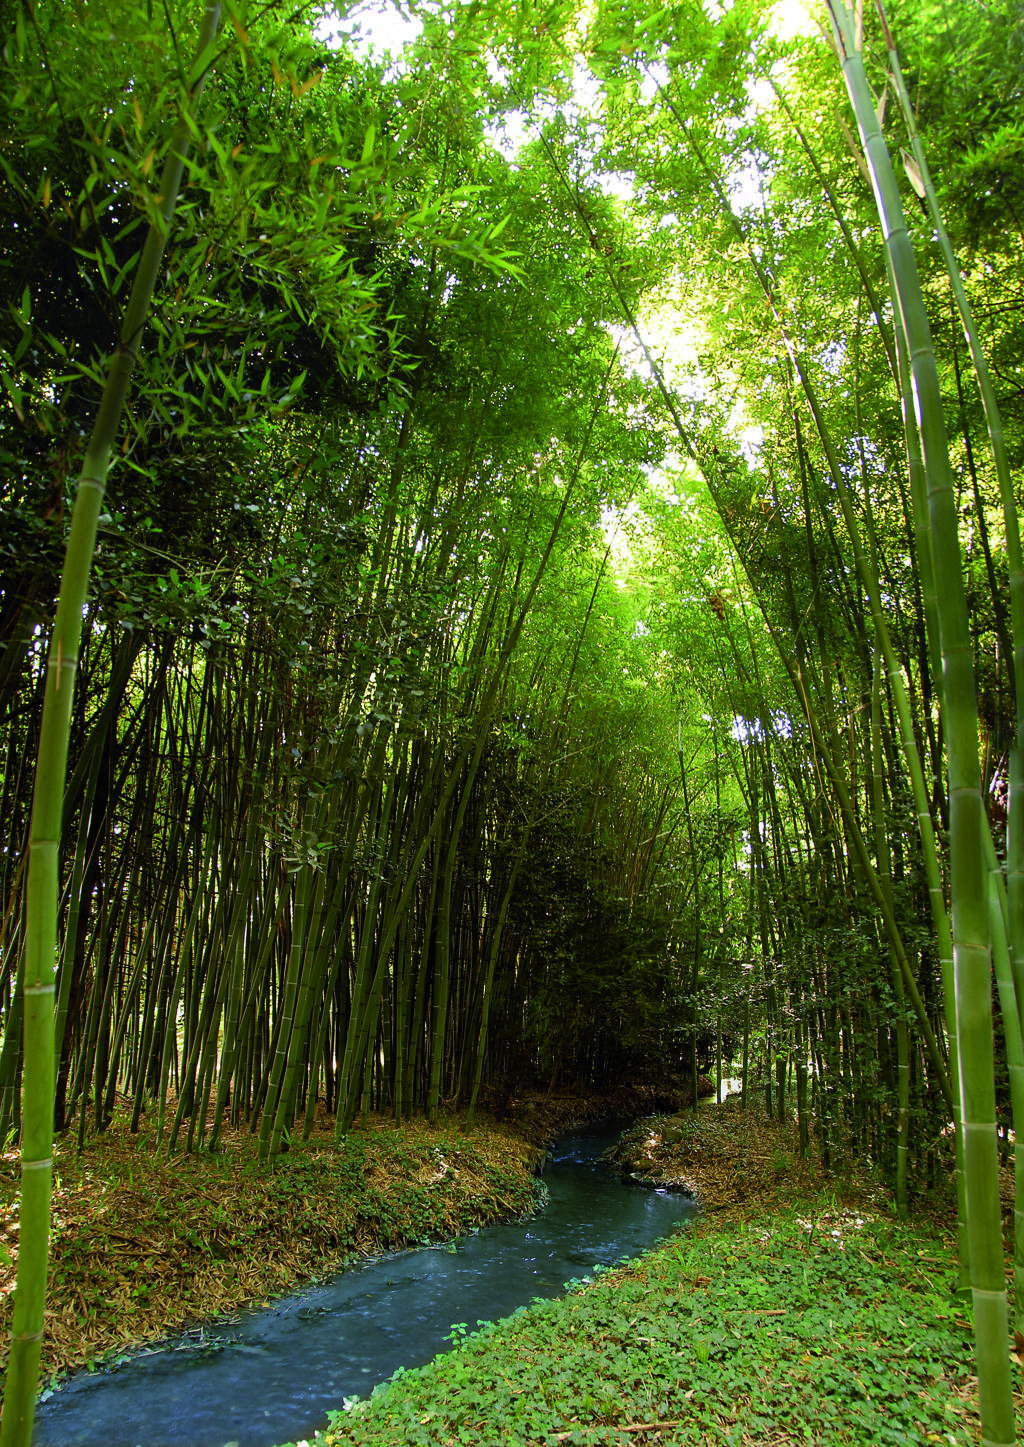 Il bosco di bambù e il canale che lo attraversa